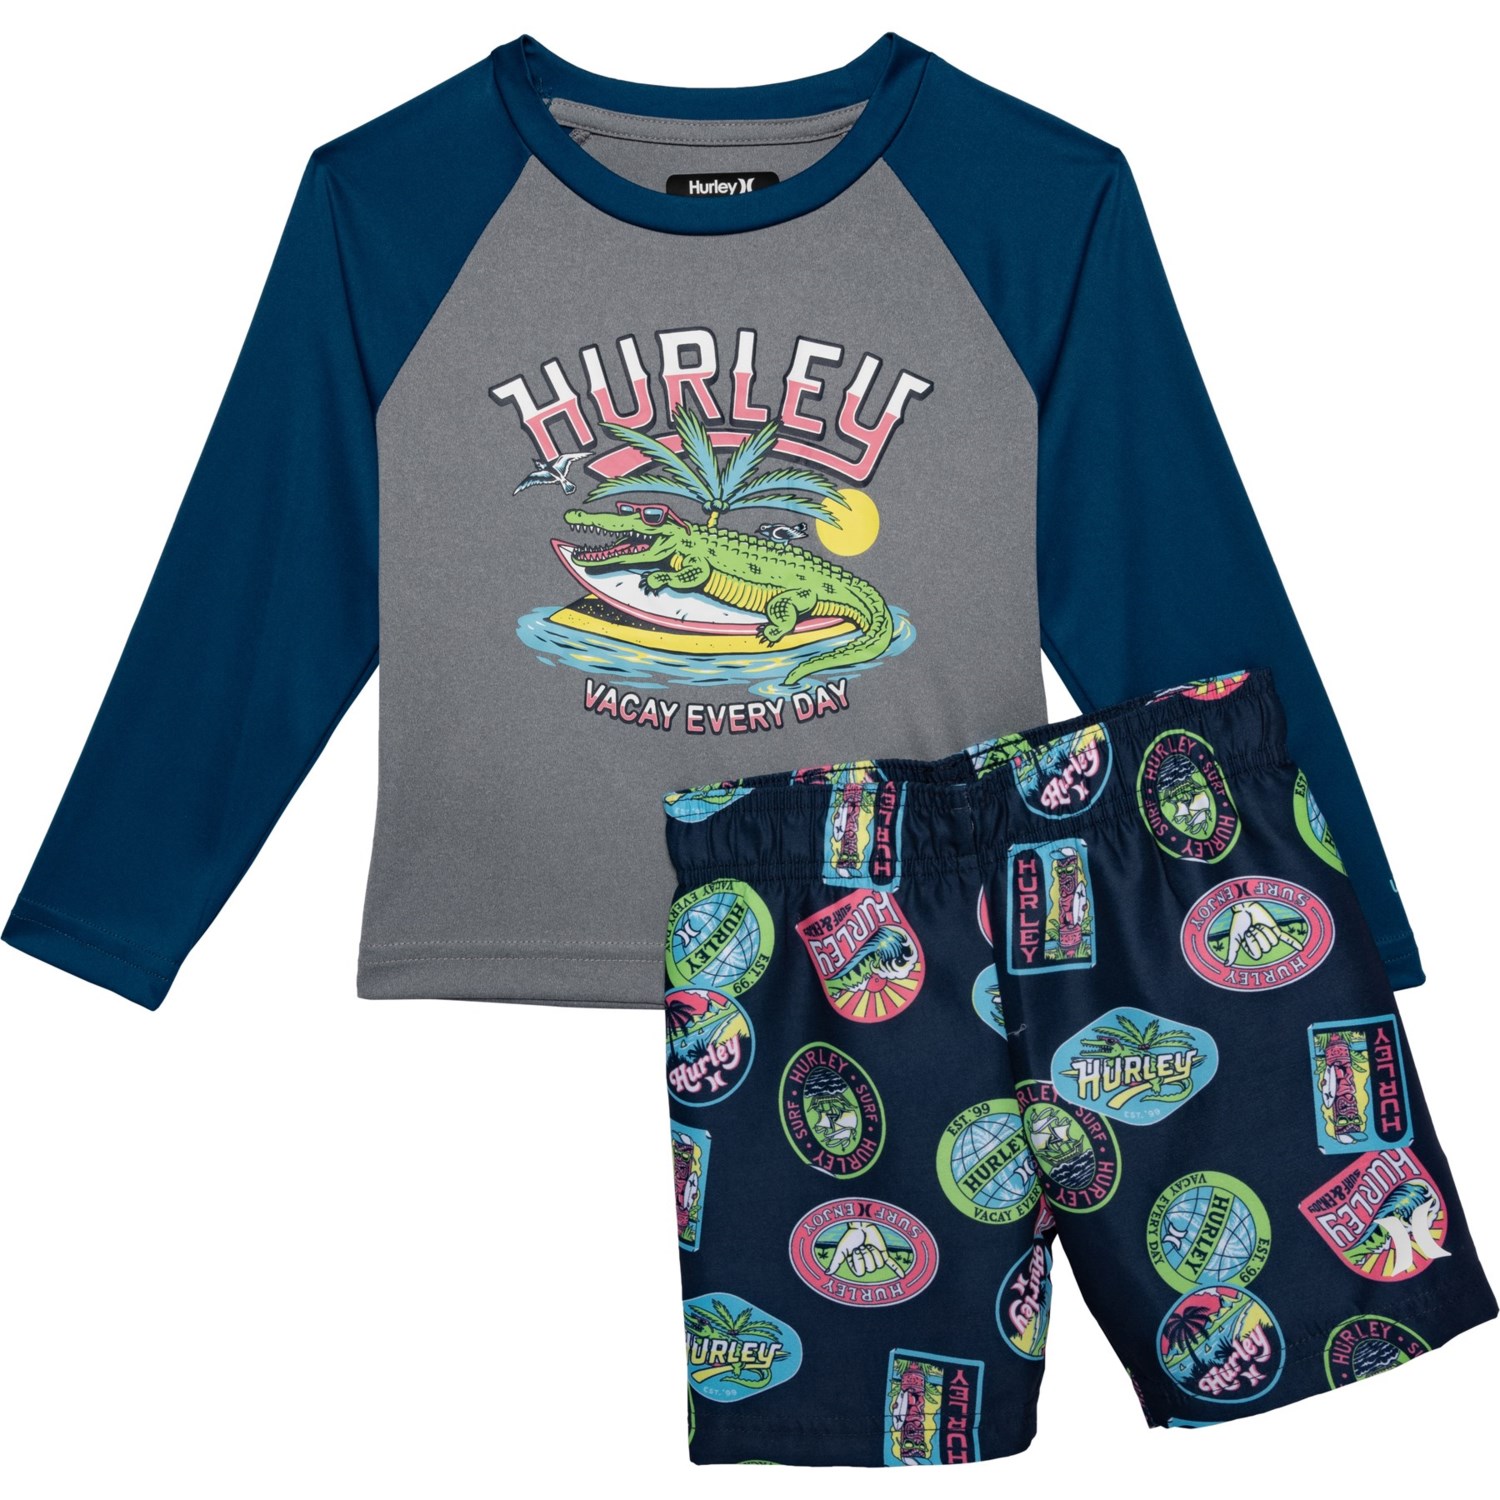 (取寄) ハーレー トドラー ボーイズ スイム シャツ アンド ショーツ セット - Upf 50以上, ロング スリーブ Hurley Toddler Boys Swim Shirt and Shorts Set - UPF 50+, Long Sleeve Blue Force 1